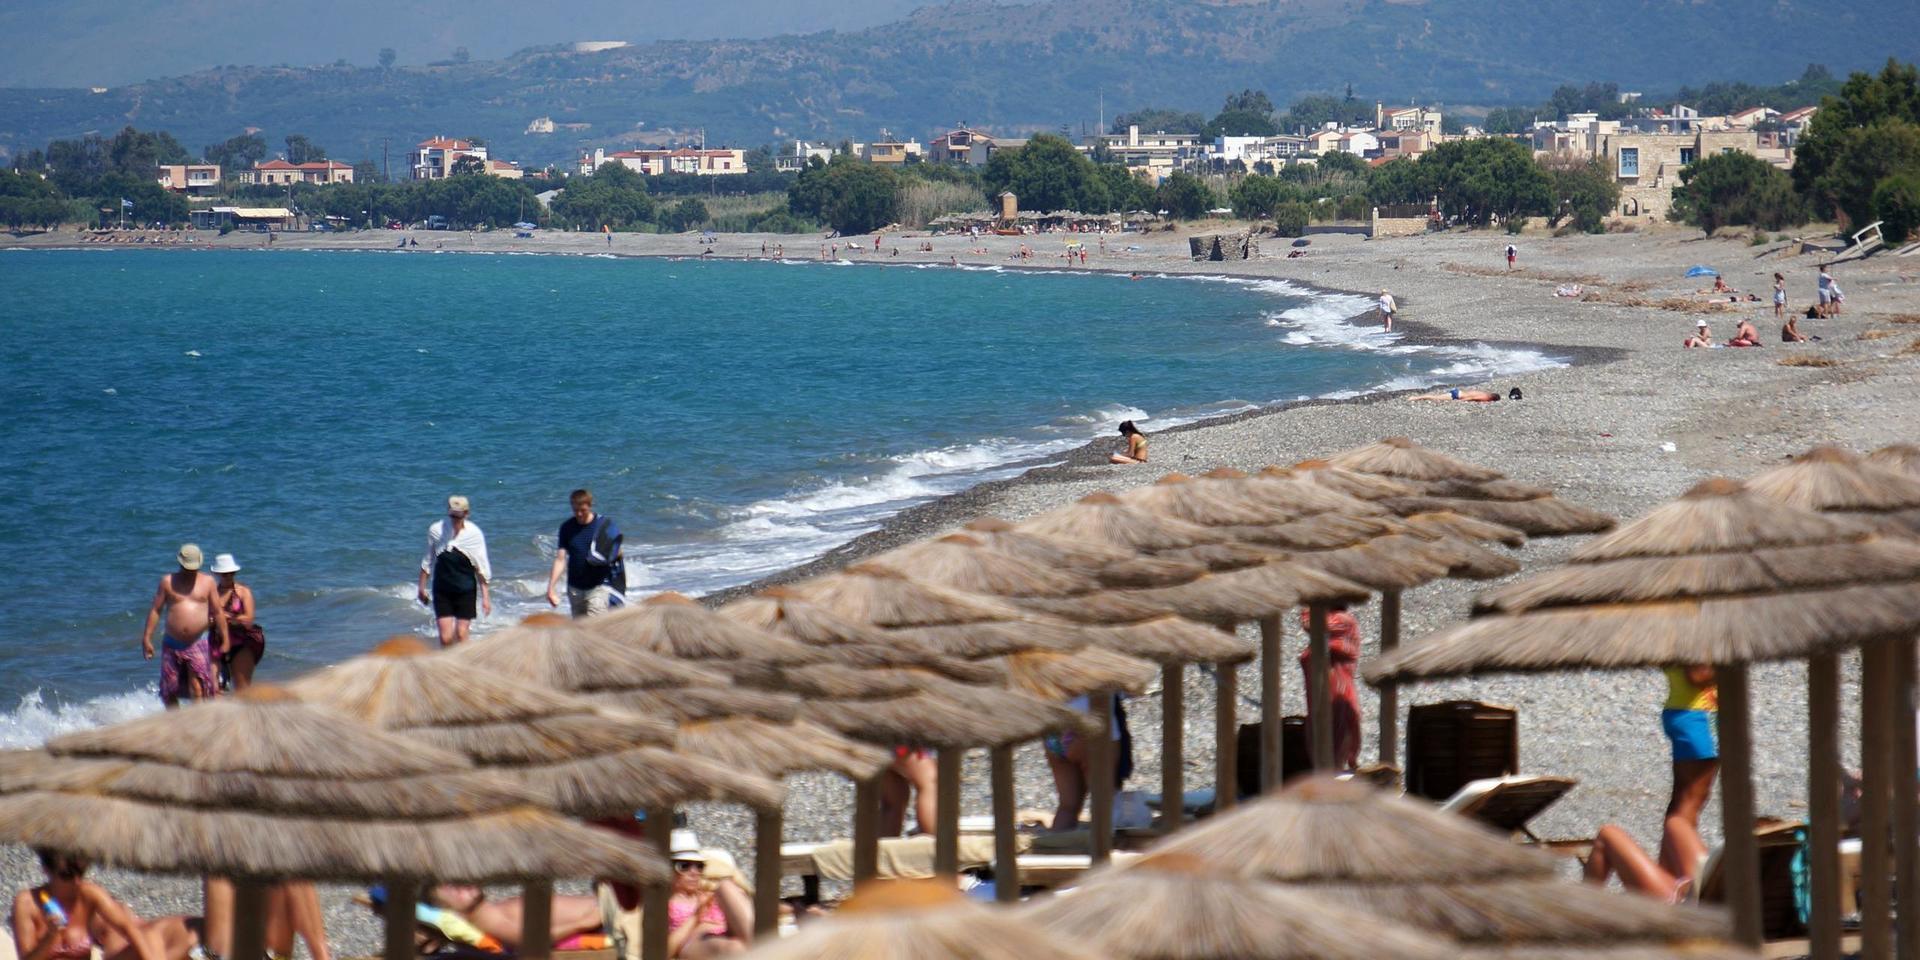 Miljontals turister besöker Greklands öar varje år. Men coronaviruset har satt stopp för det, bland annat på Kreta där bilden är tagen. Arkivbild.